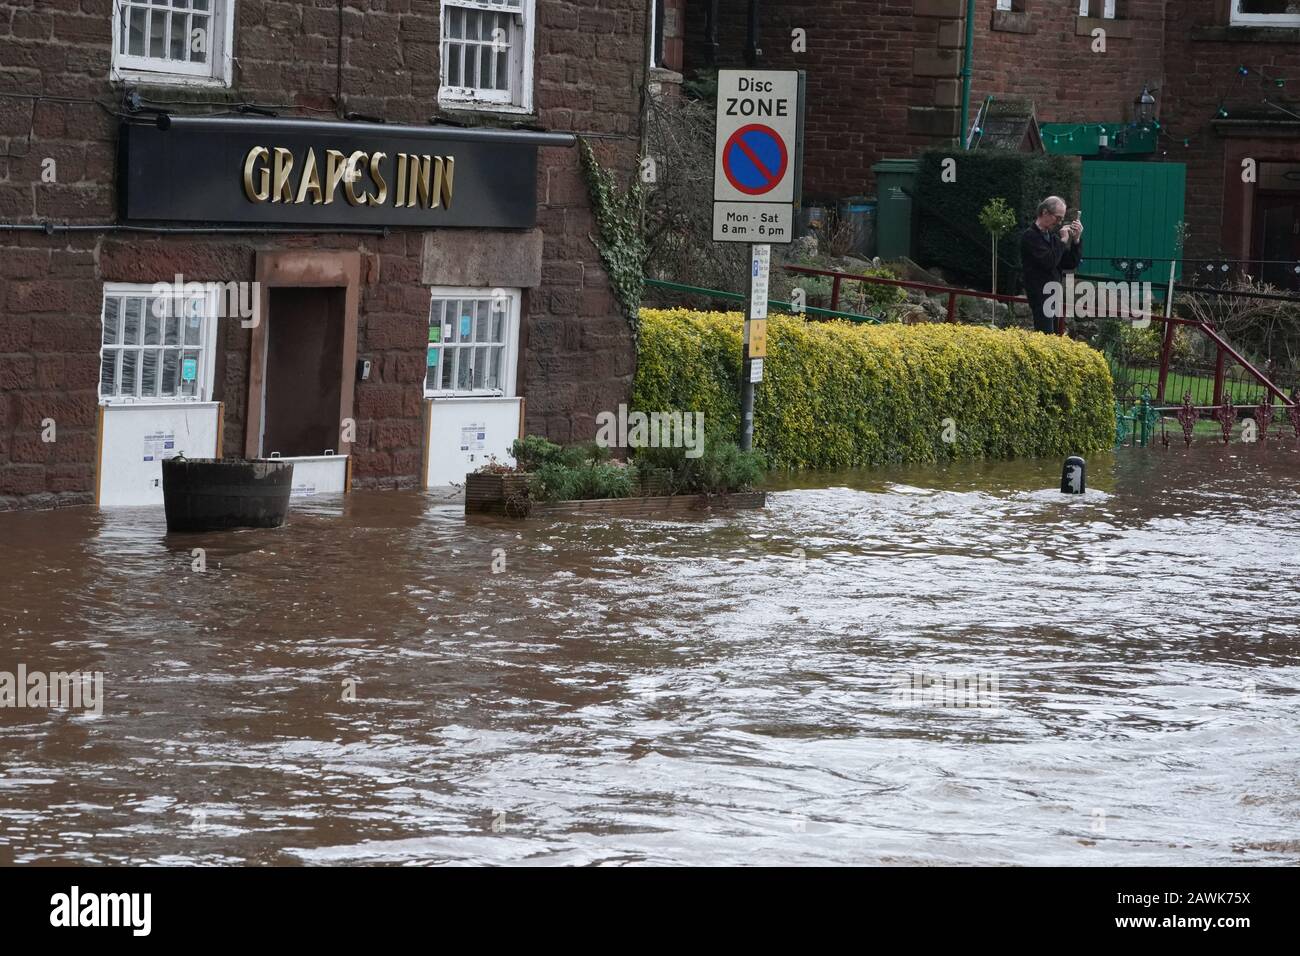 Strade inondate in Appleby-in-Westmorland, Cumbria, come Storm Ciara colpisce il Regno Unito. Foto Stock